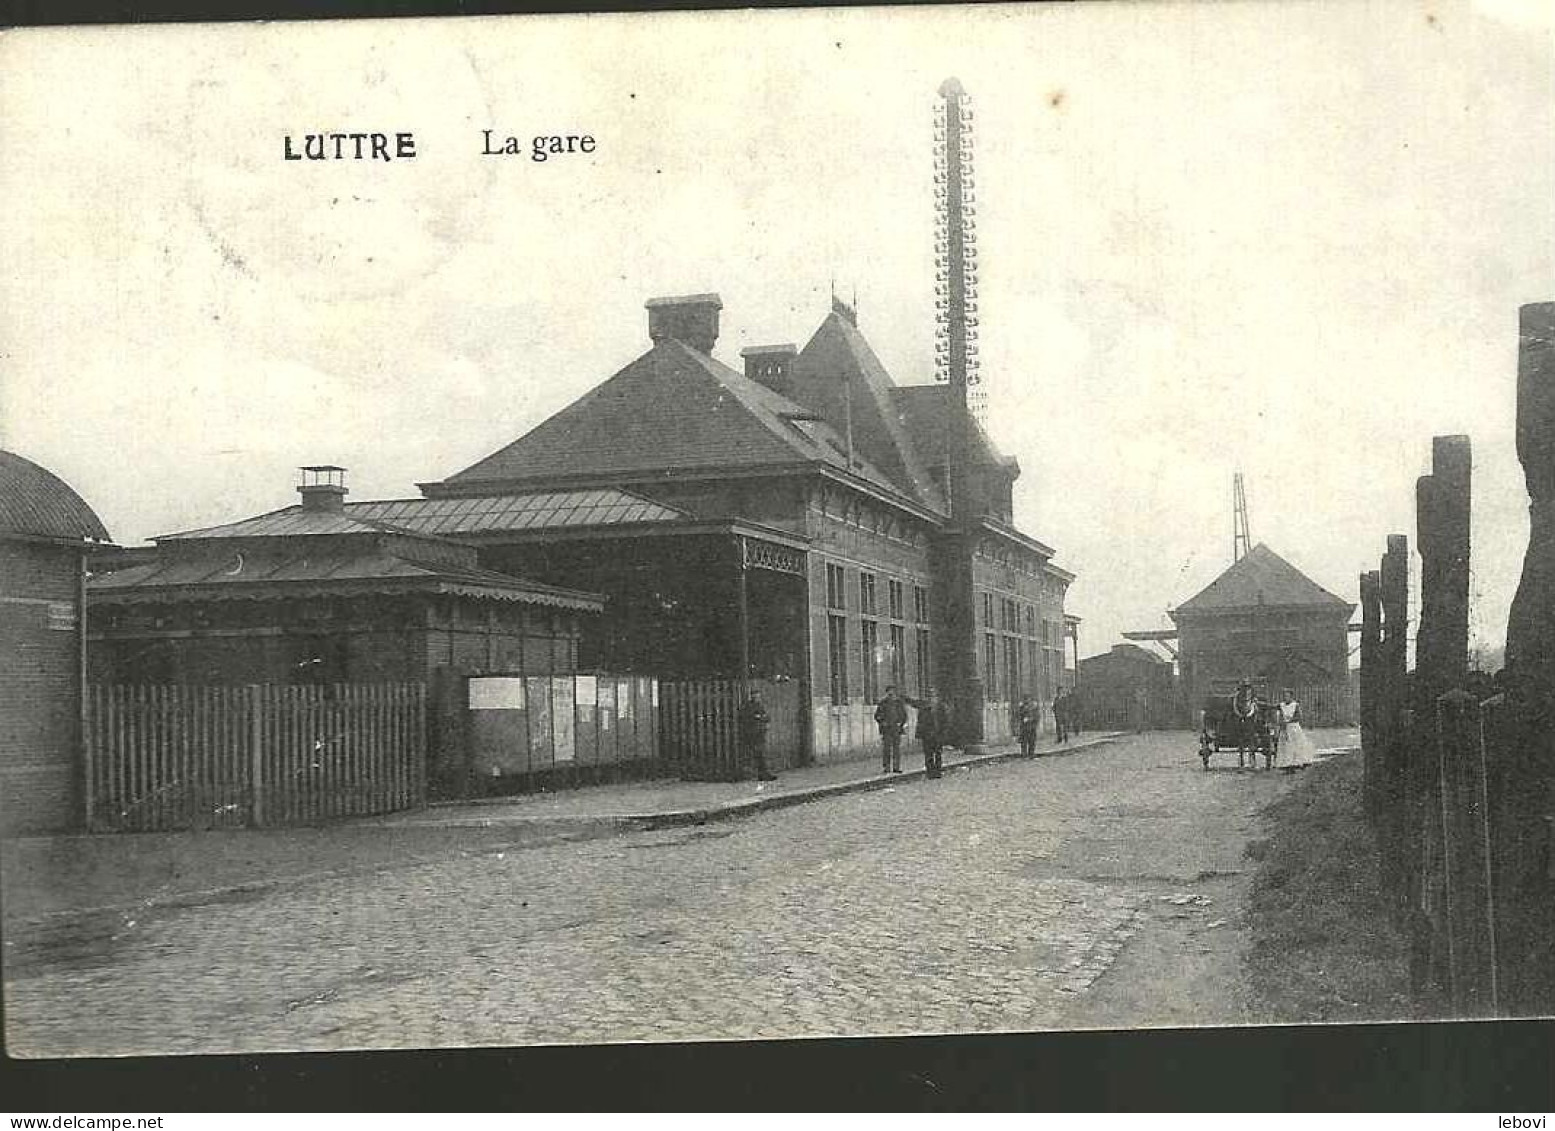 LUTTRE « La Gare » (1913) - Pont-a-Celles